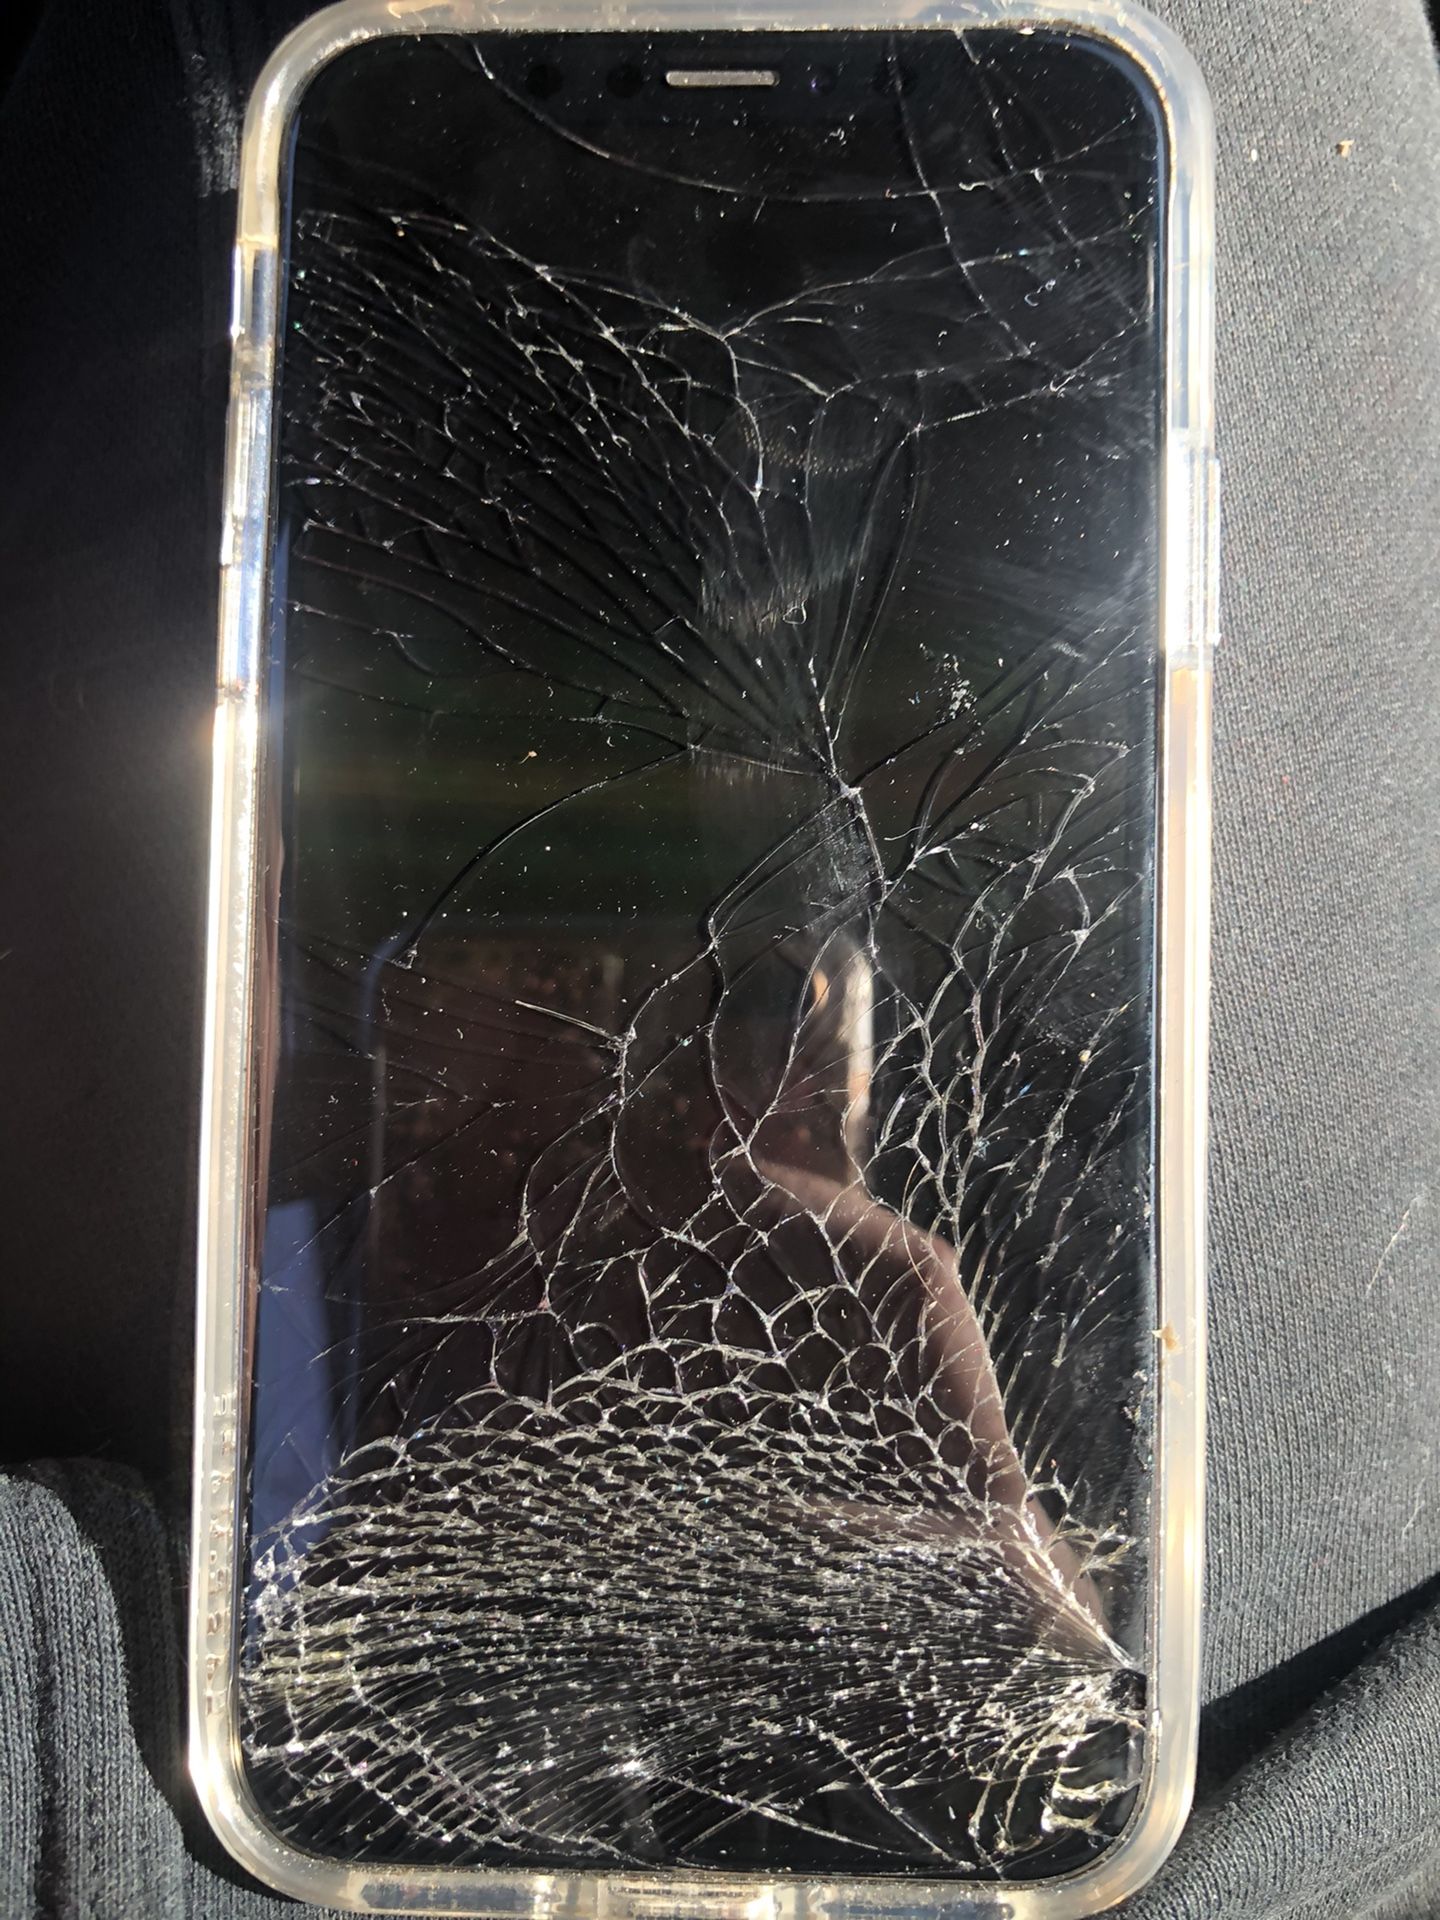 Broken IPhone X